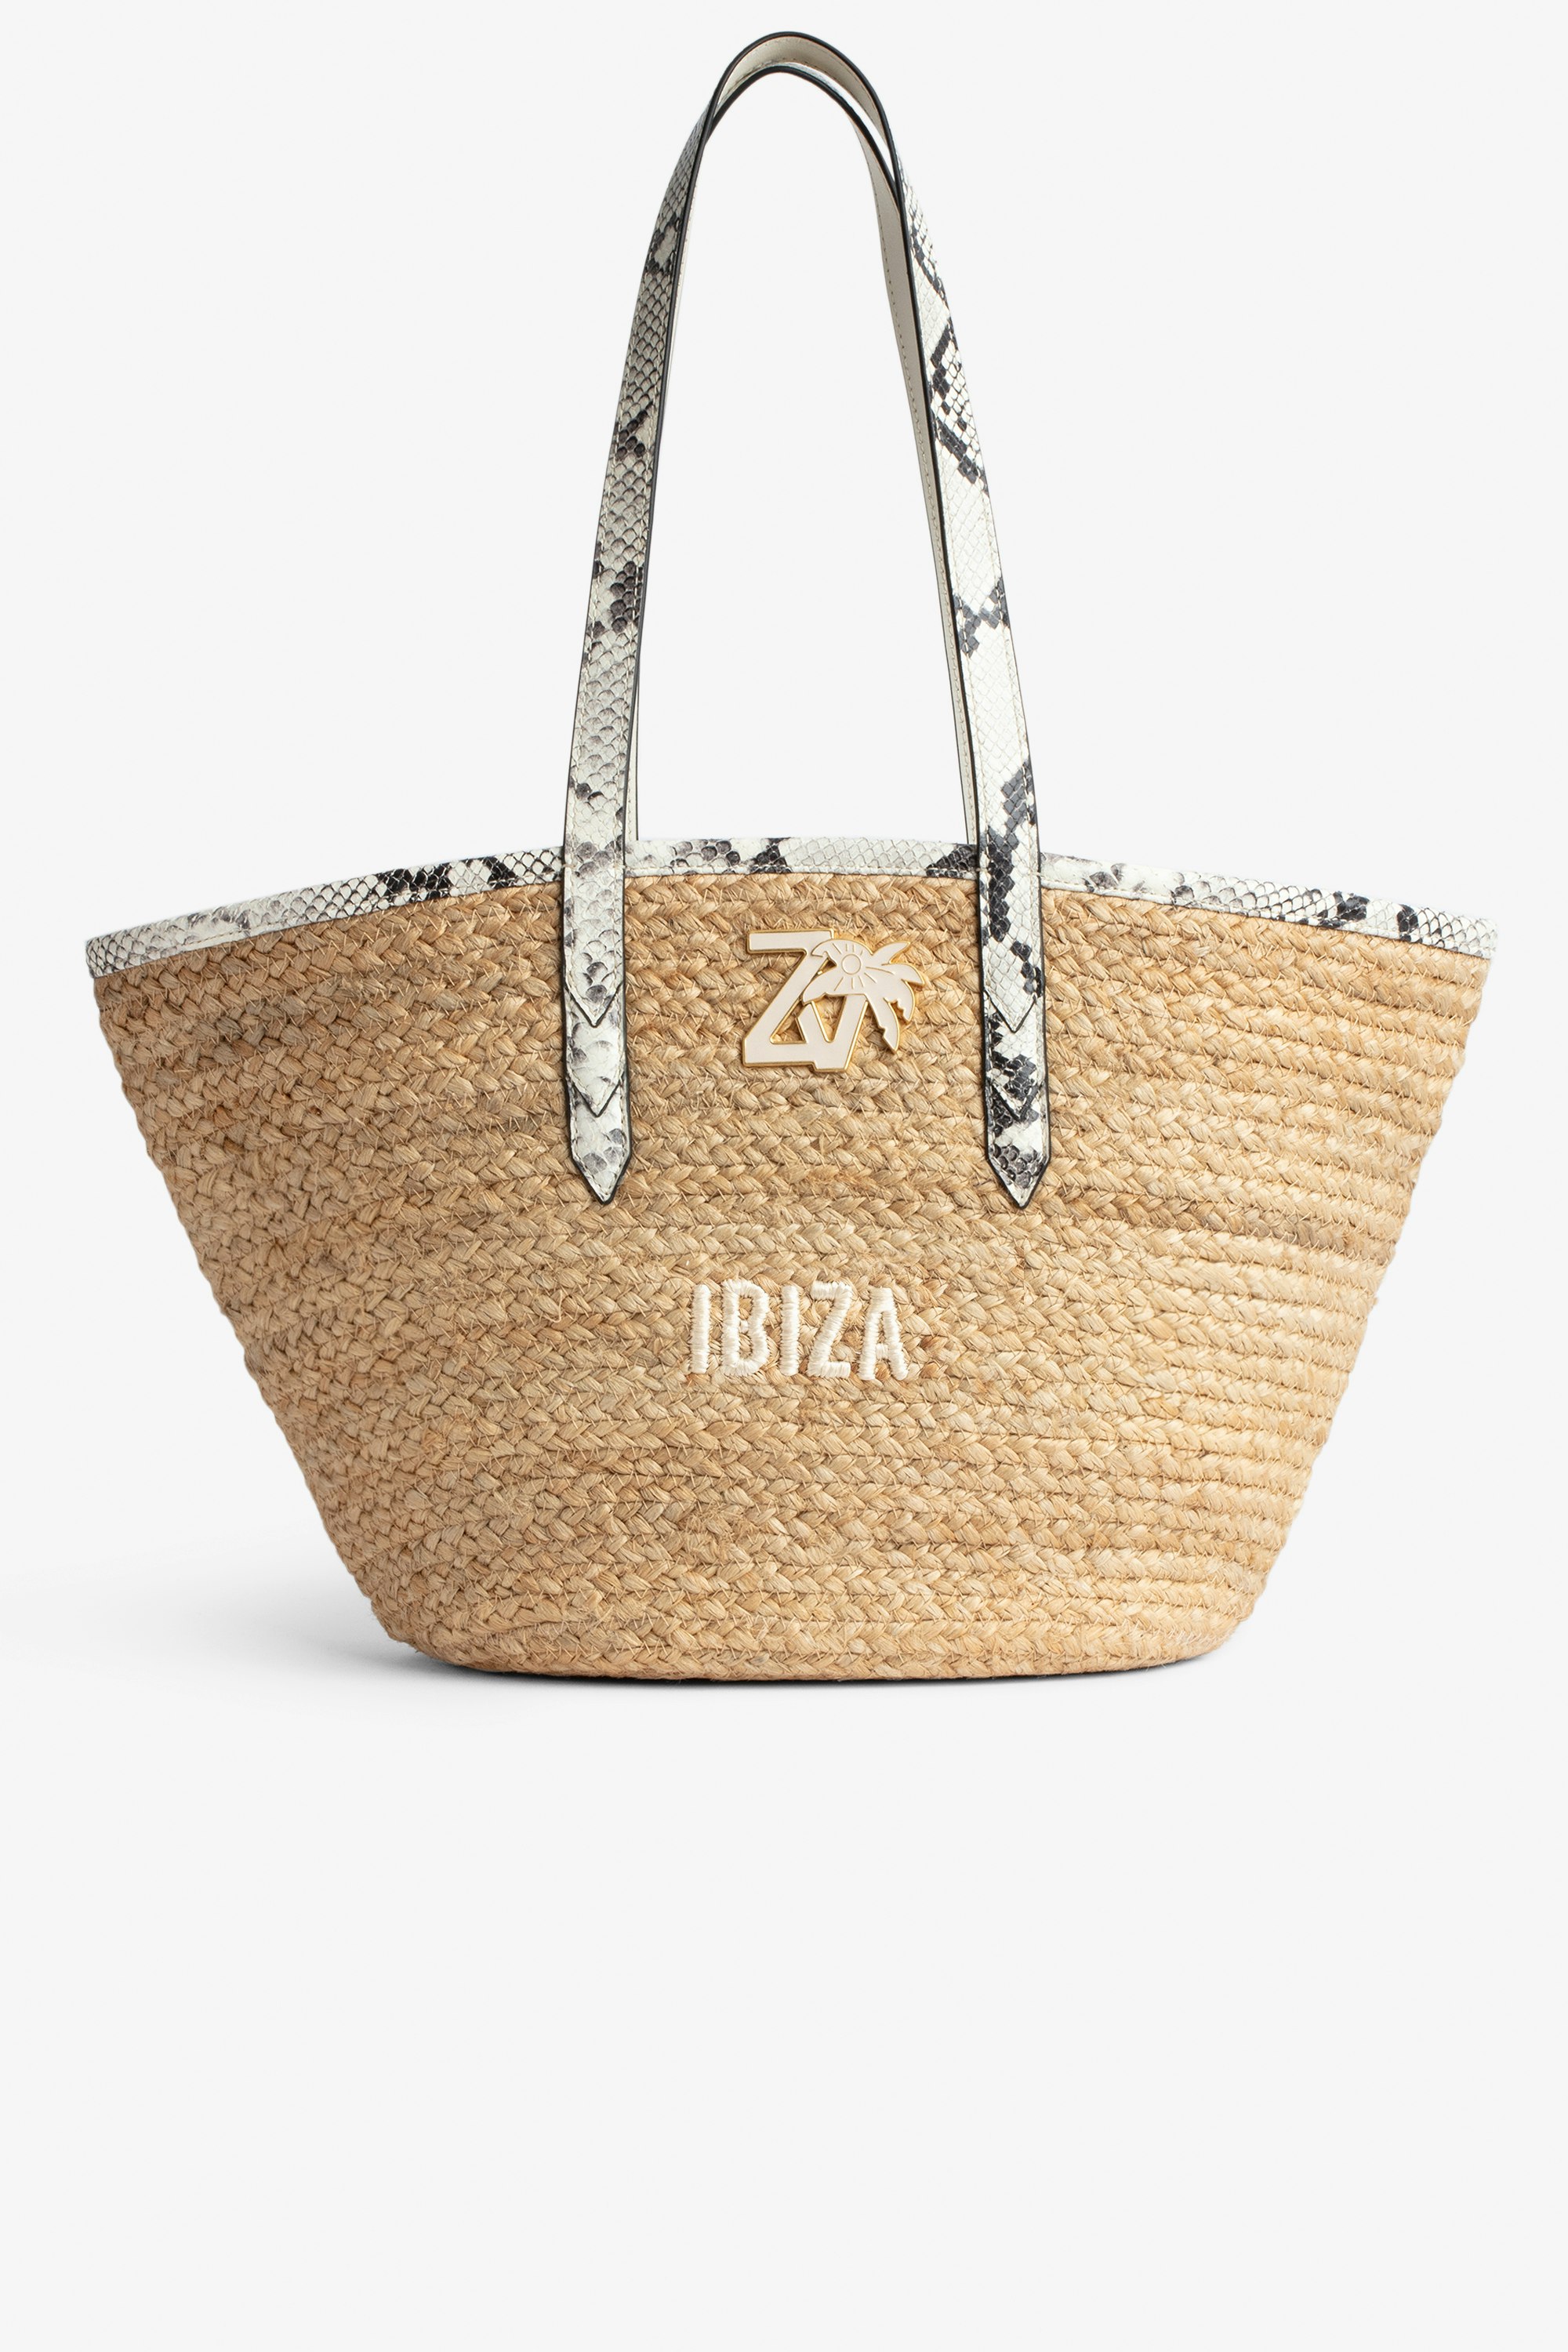 Tasche Le Beach Bag Damen-Strohtasche mit Henkeln aus ecrufarbenem Leder in Python-Optik, „Ibiza“-Stickerei und ZV-Charm